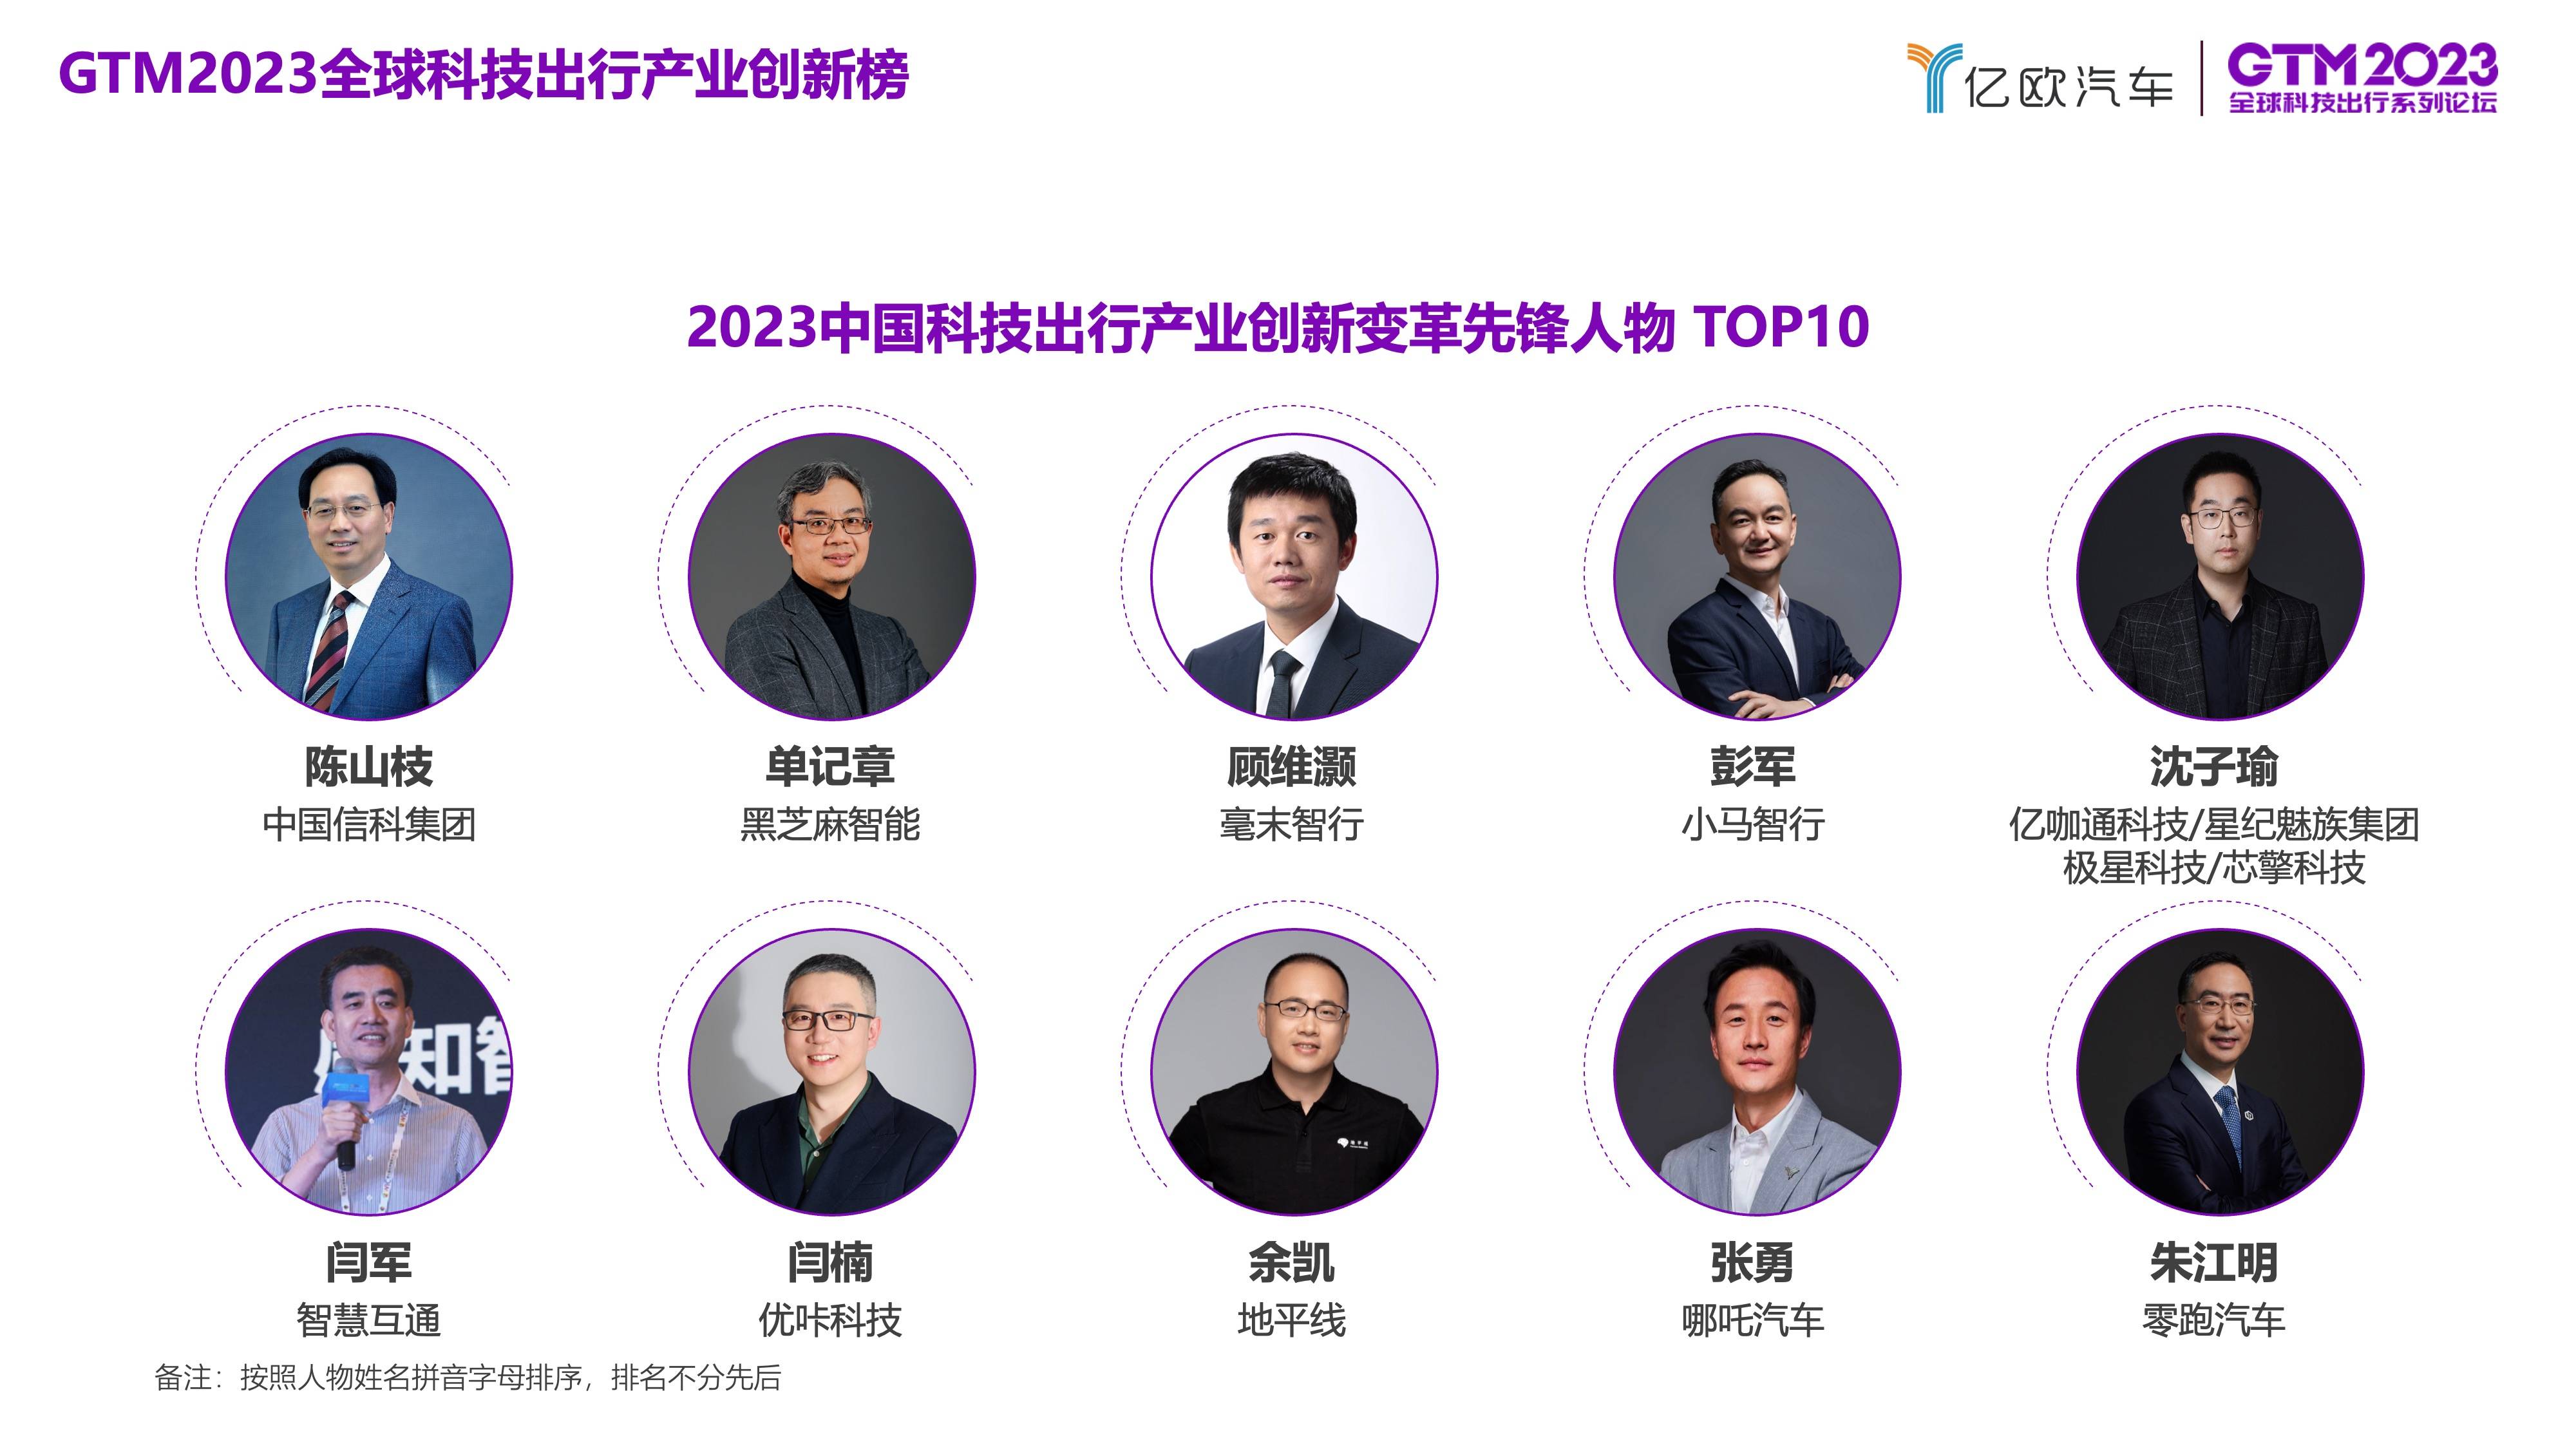 “2023中国科技出行产业创新变革先锋人物 TOP10”榜单正式发布